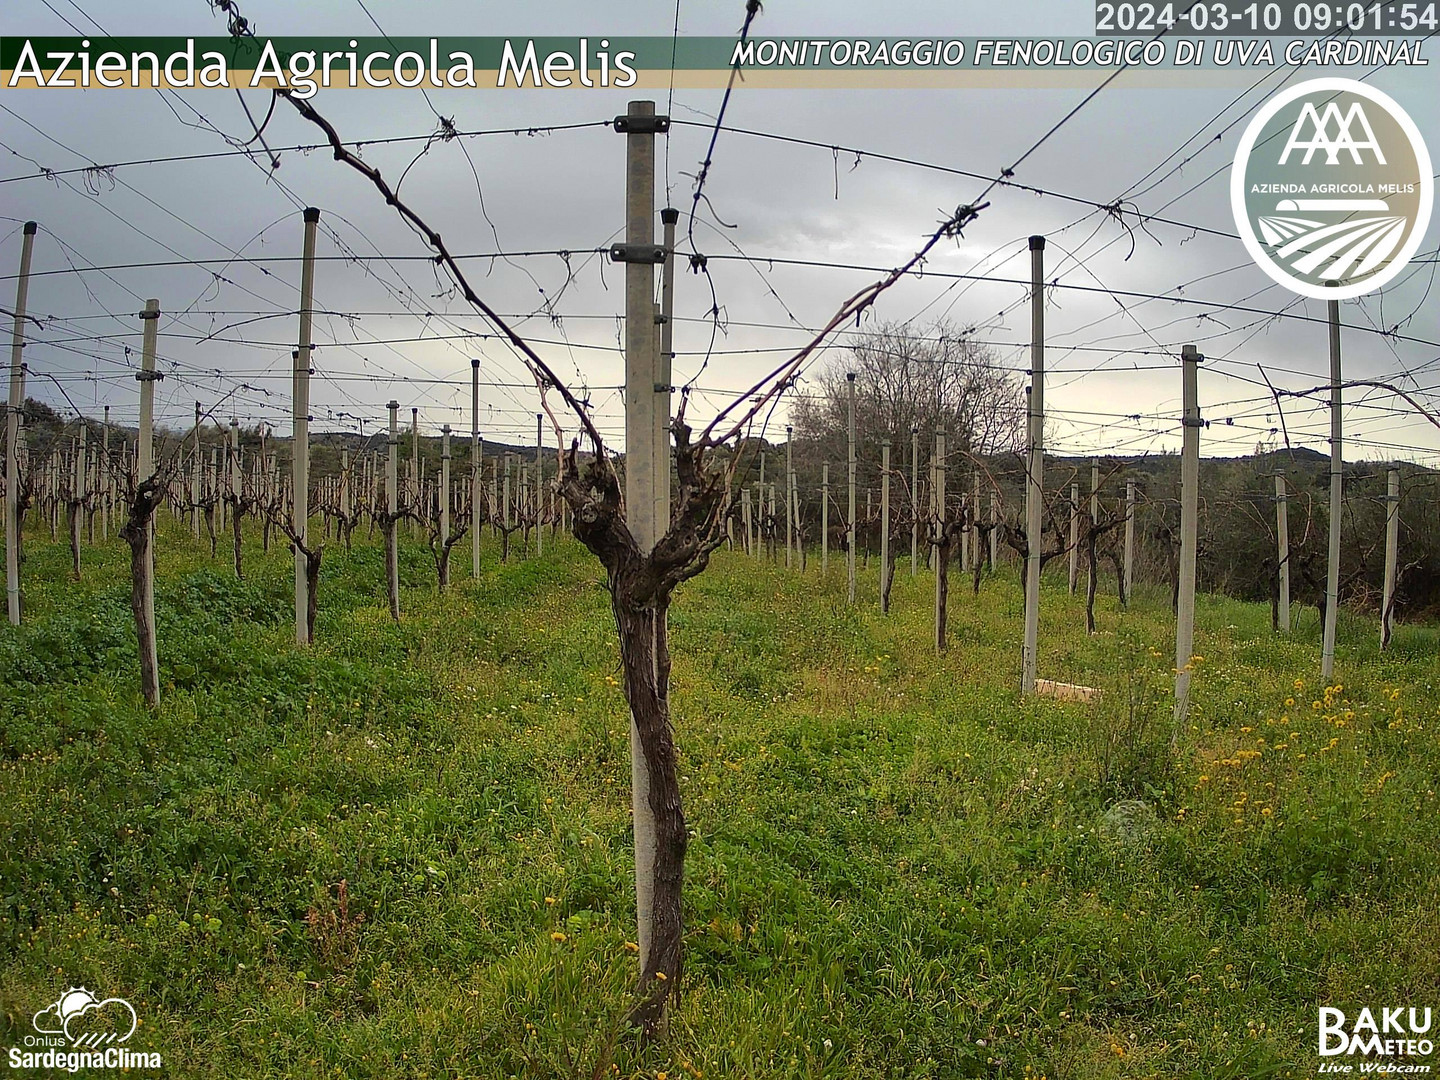 time-lapse frame, Bari Sardo - Fenologica webcam